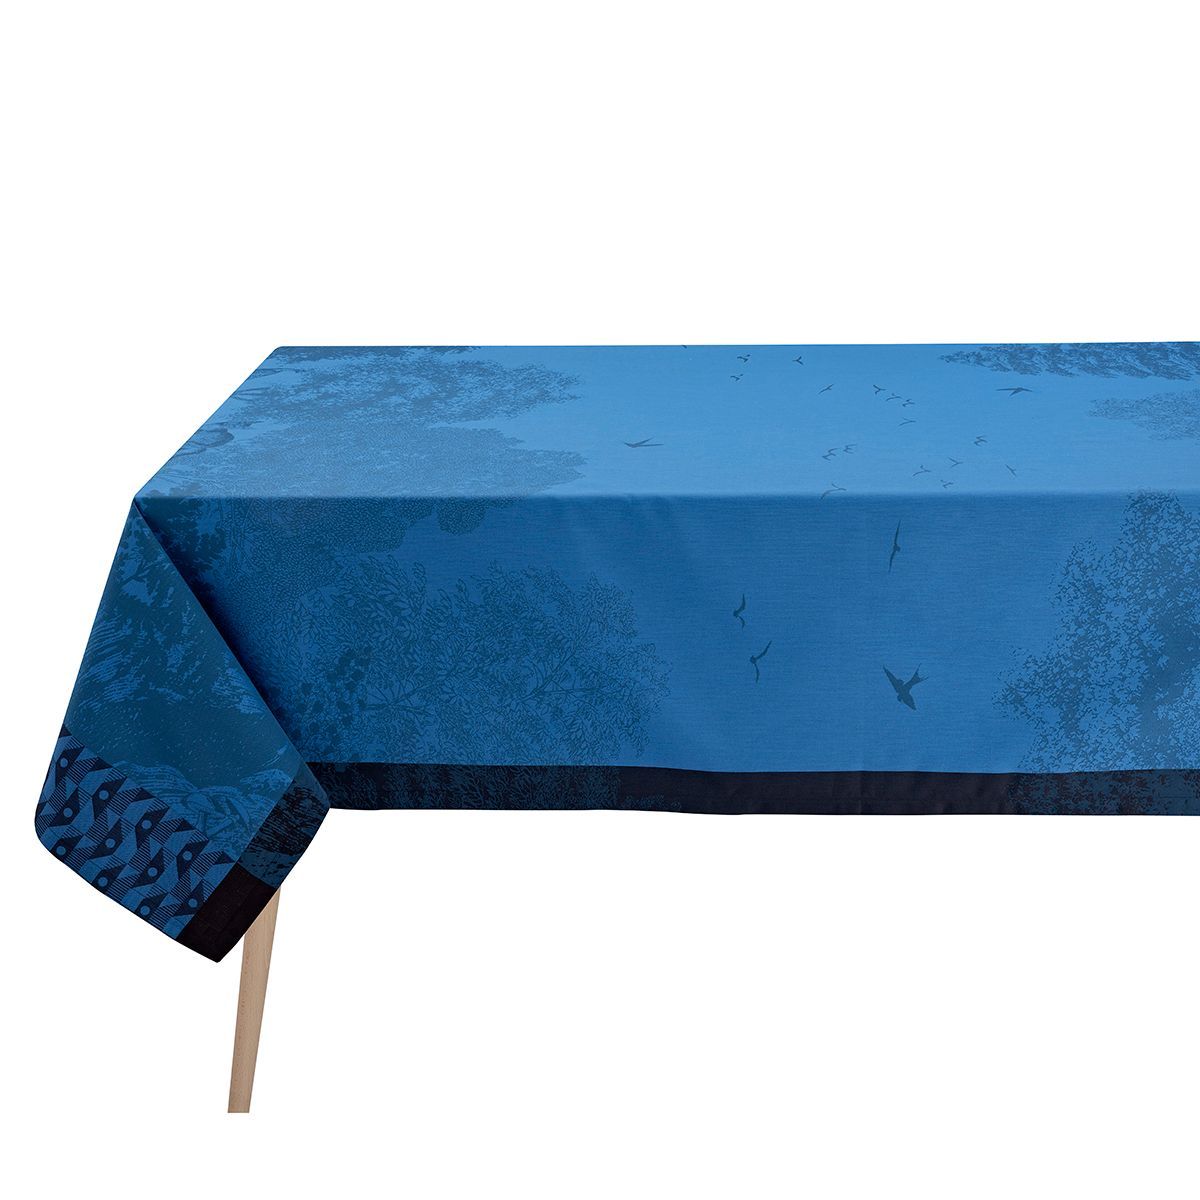 Fig Linens - Foret Enchantee Blue Table Linens by Le Jacquard Français - Tablecloth